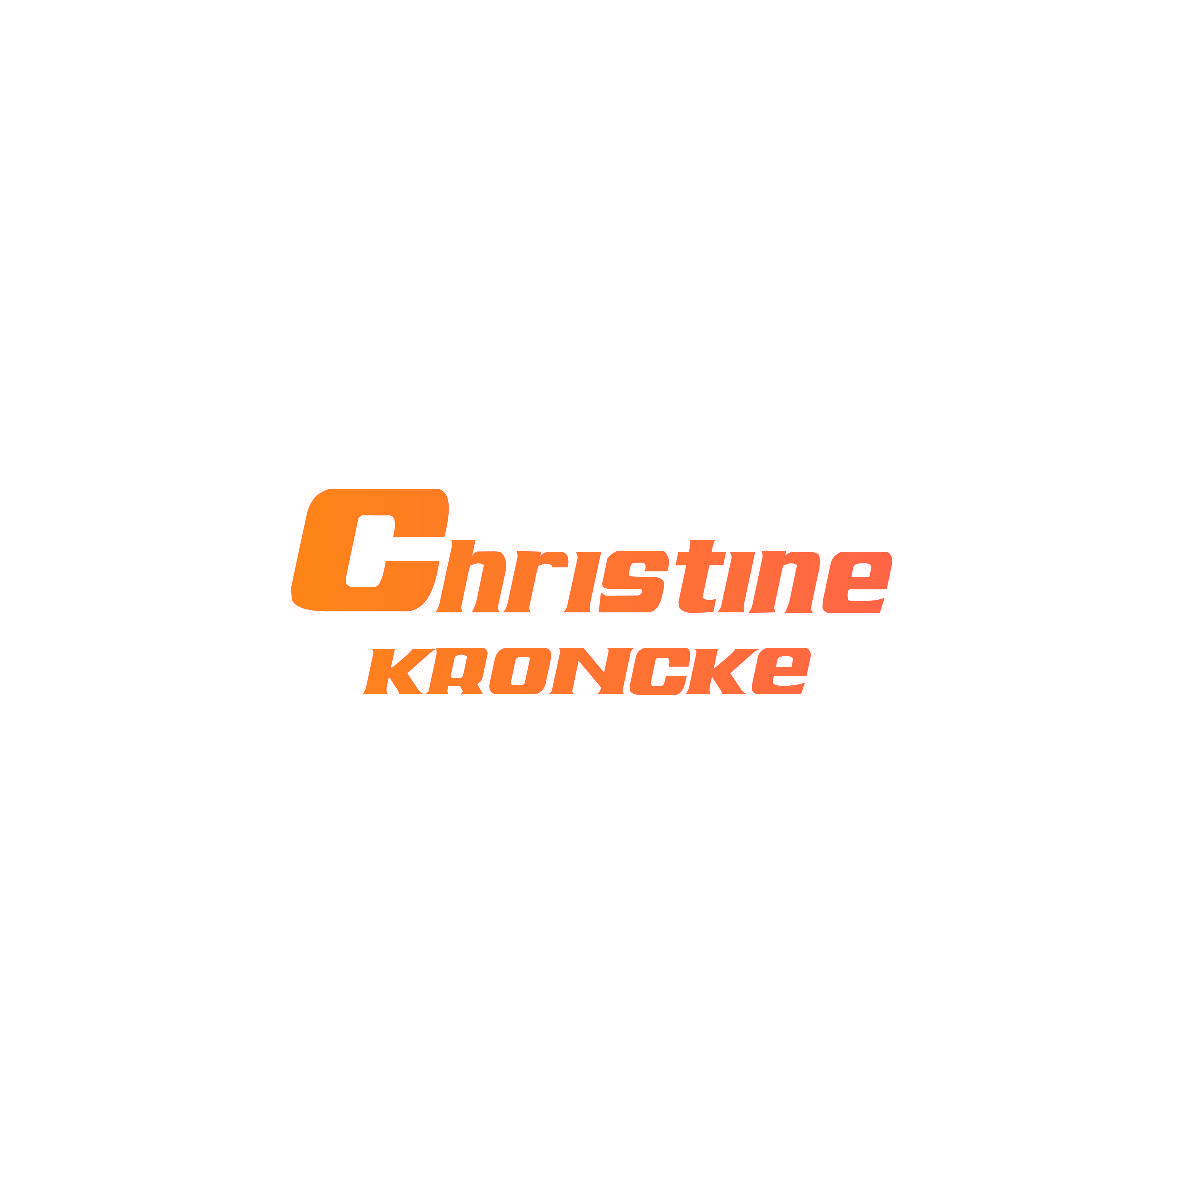 CHRISTINE KRONCKE